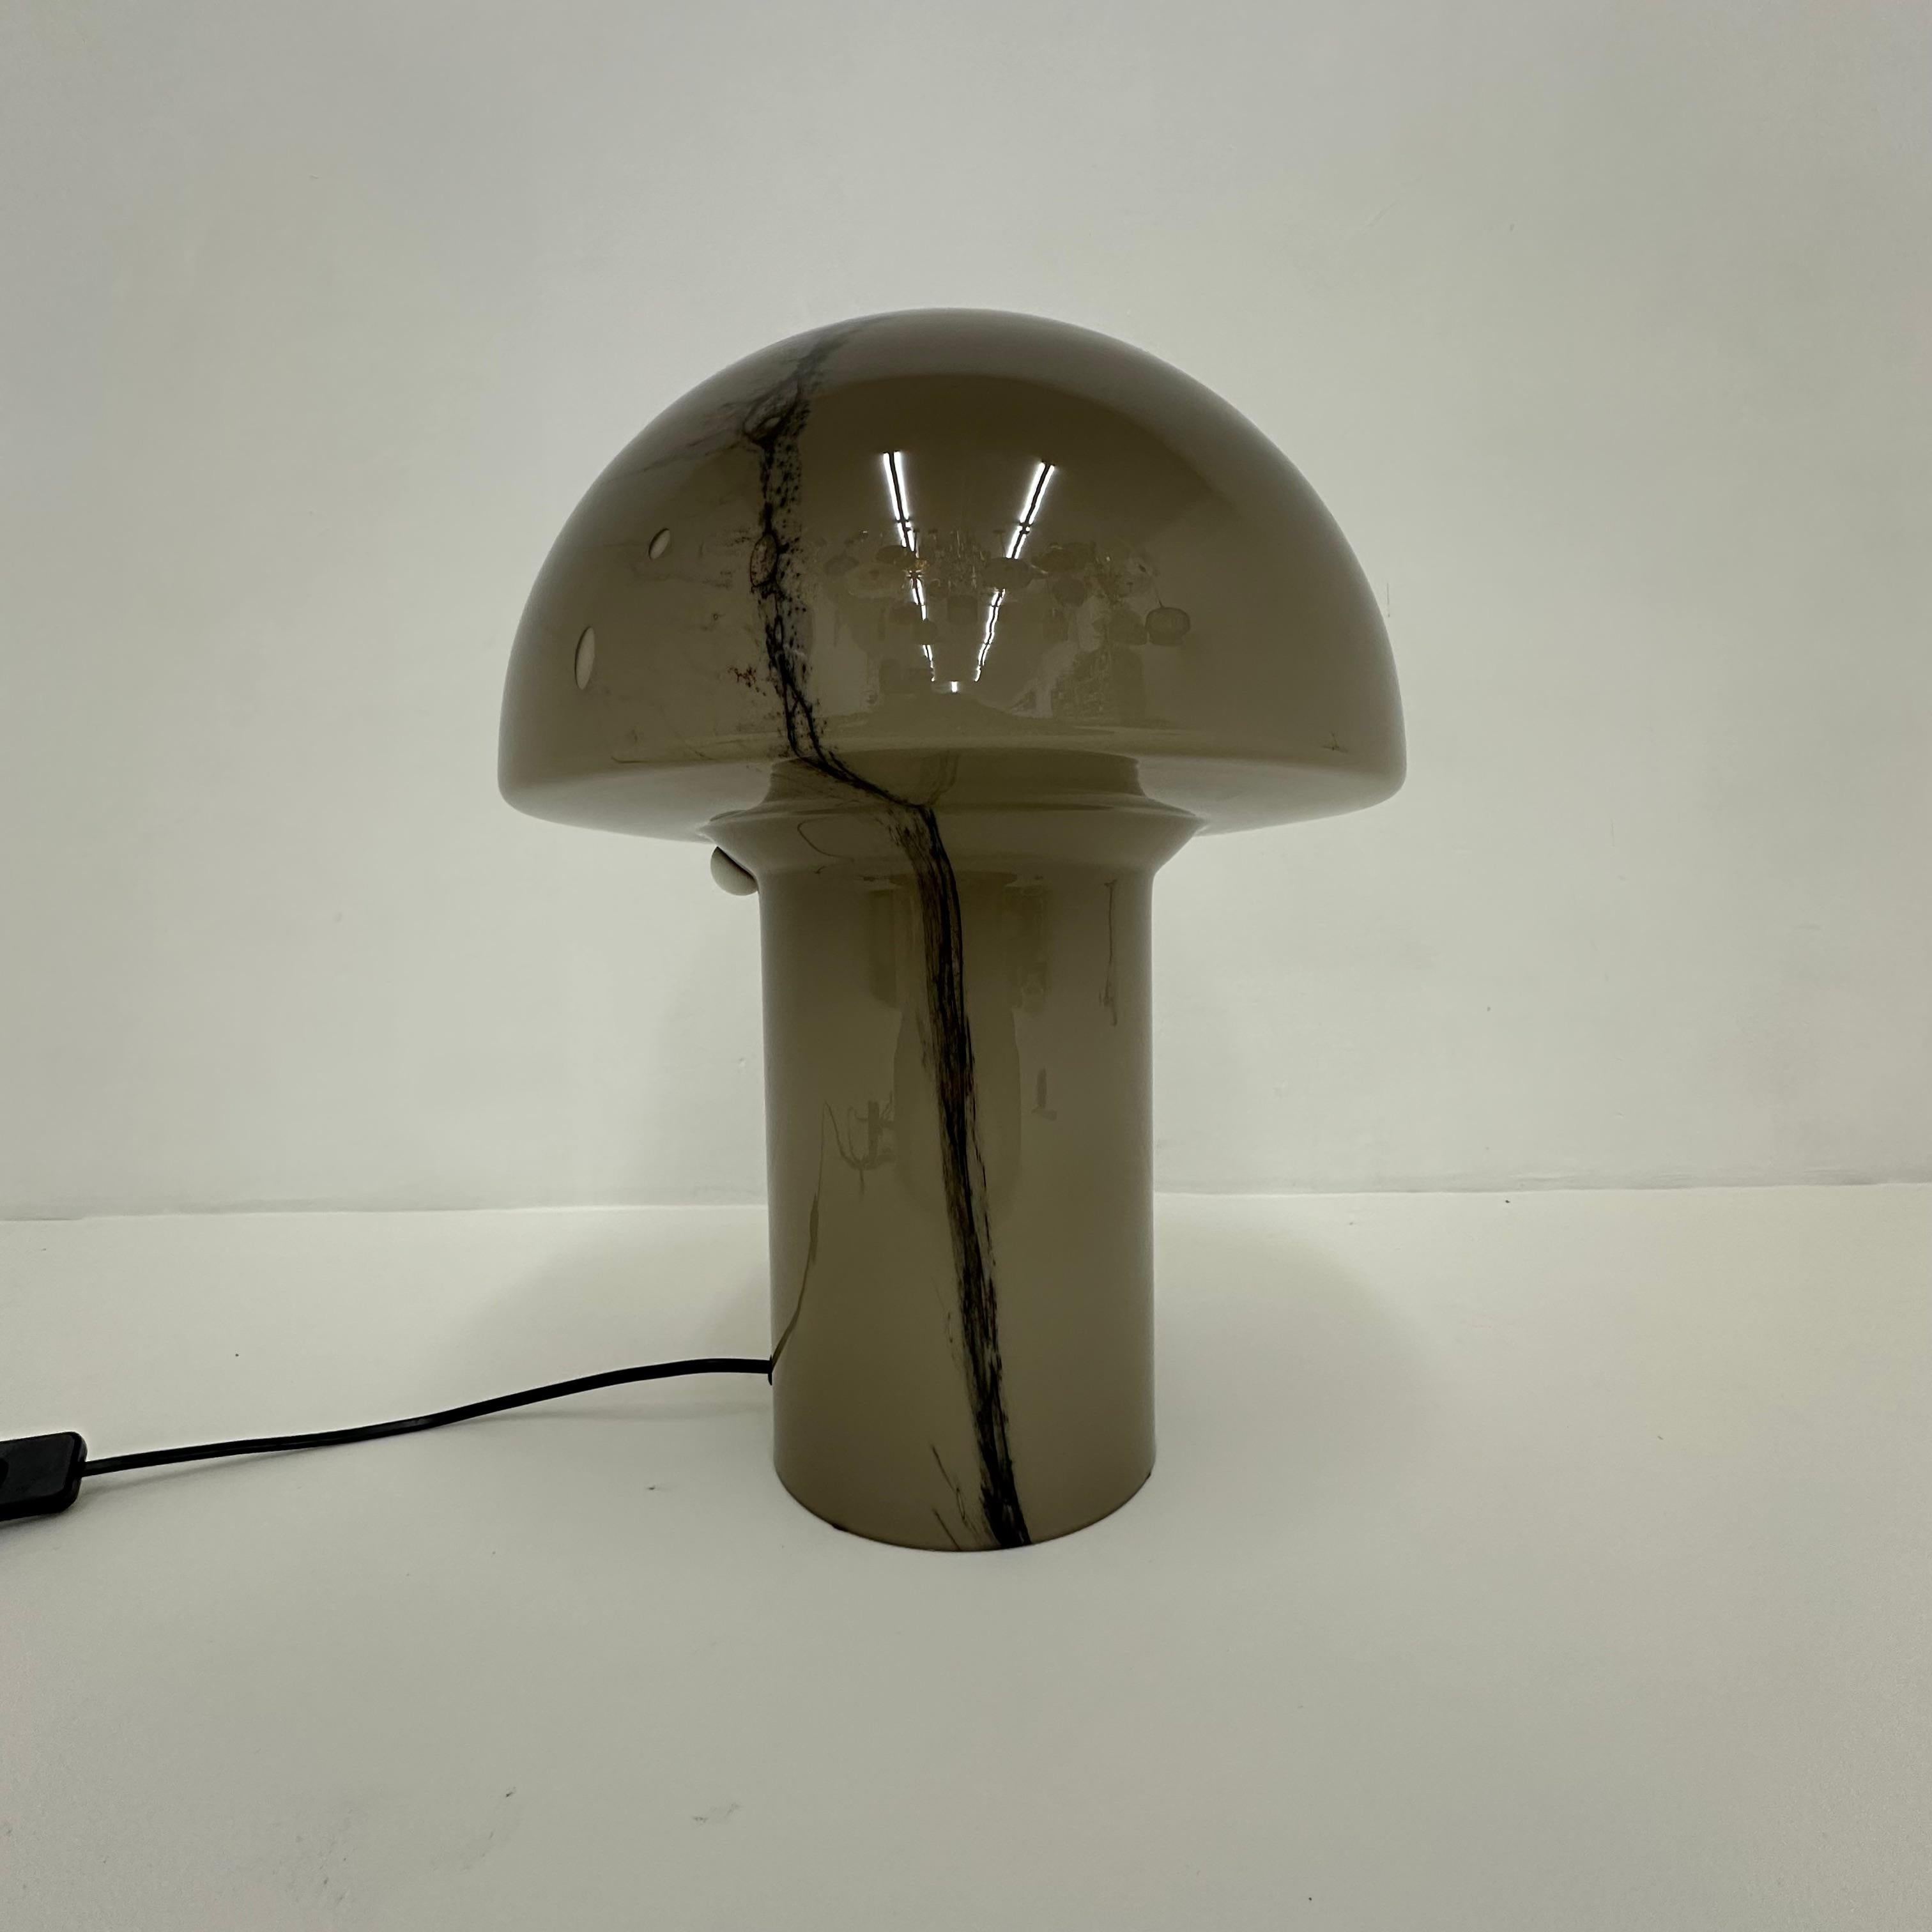 Peil & Putzer Mushroom table lamp , 1970’s
Dimensions: 42cm H, 32cm Diameter
Material: Glass
Color: Brown